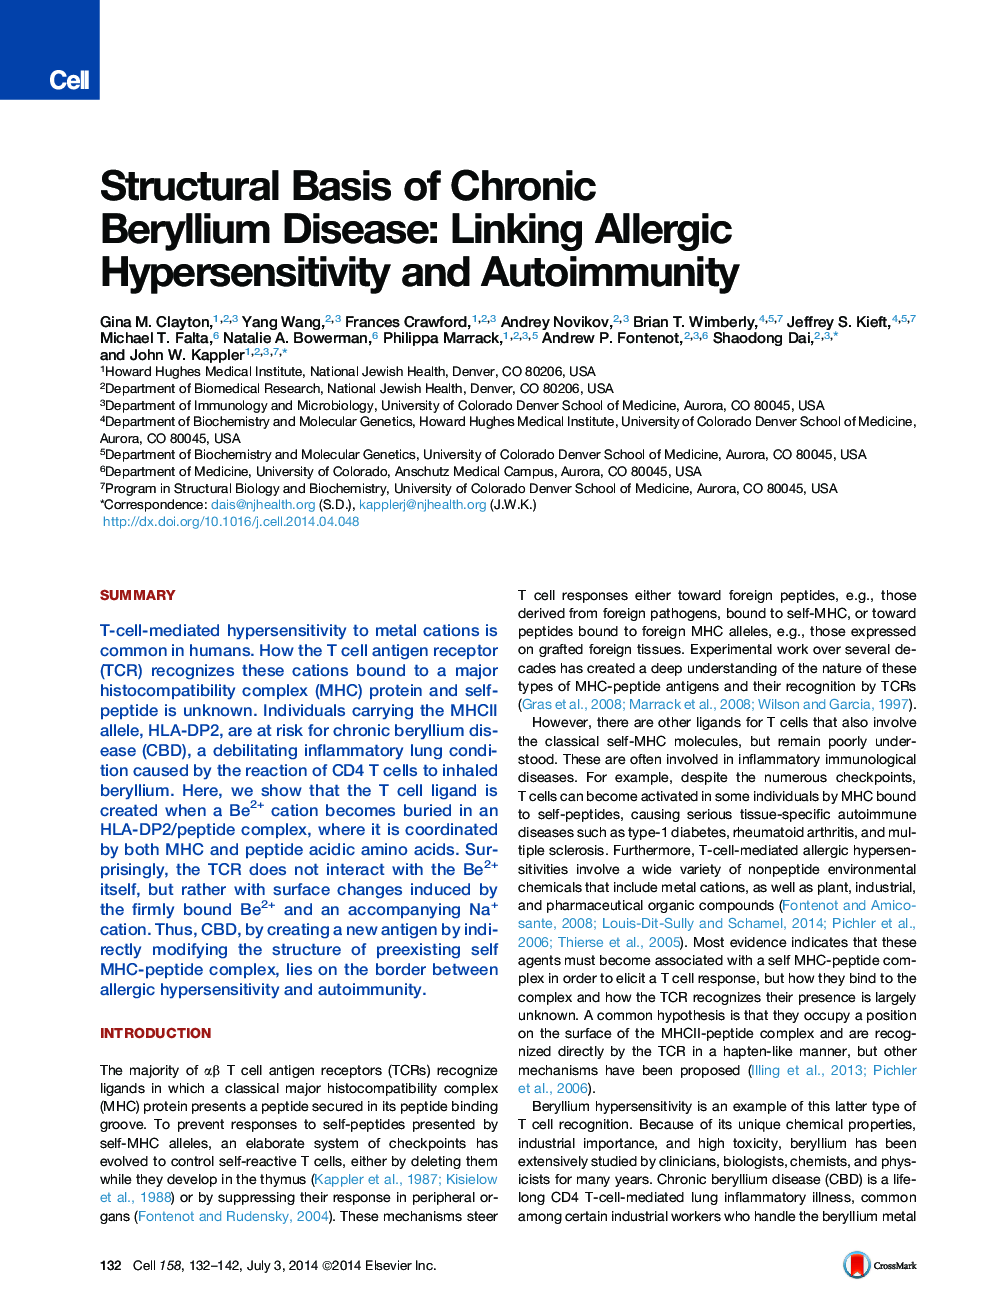 پایه ساختاری بیماری مزمن بریلیم: پیوند دادن حساسیت به آلرژیک و خودمحور 